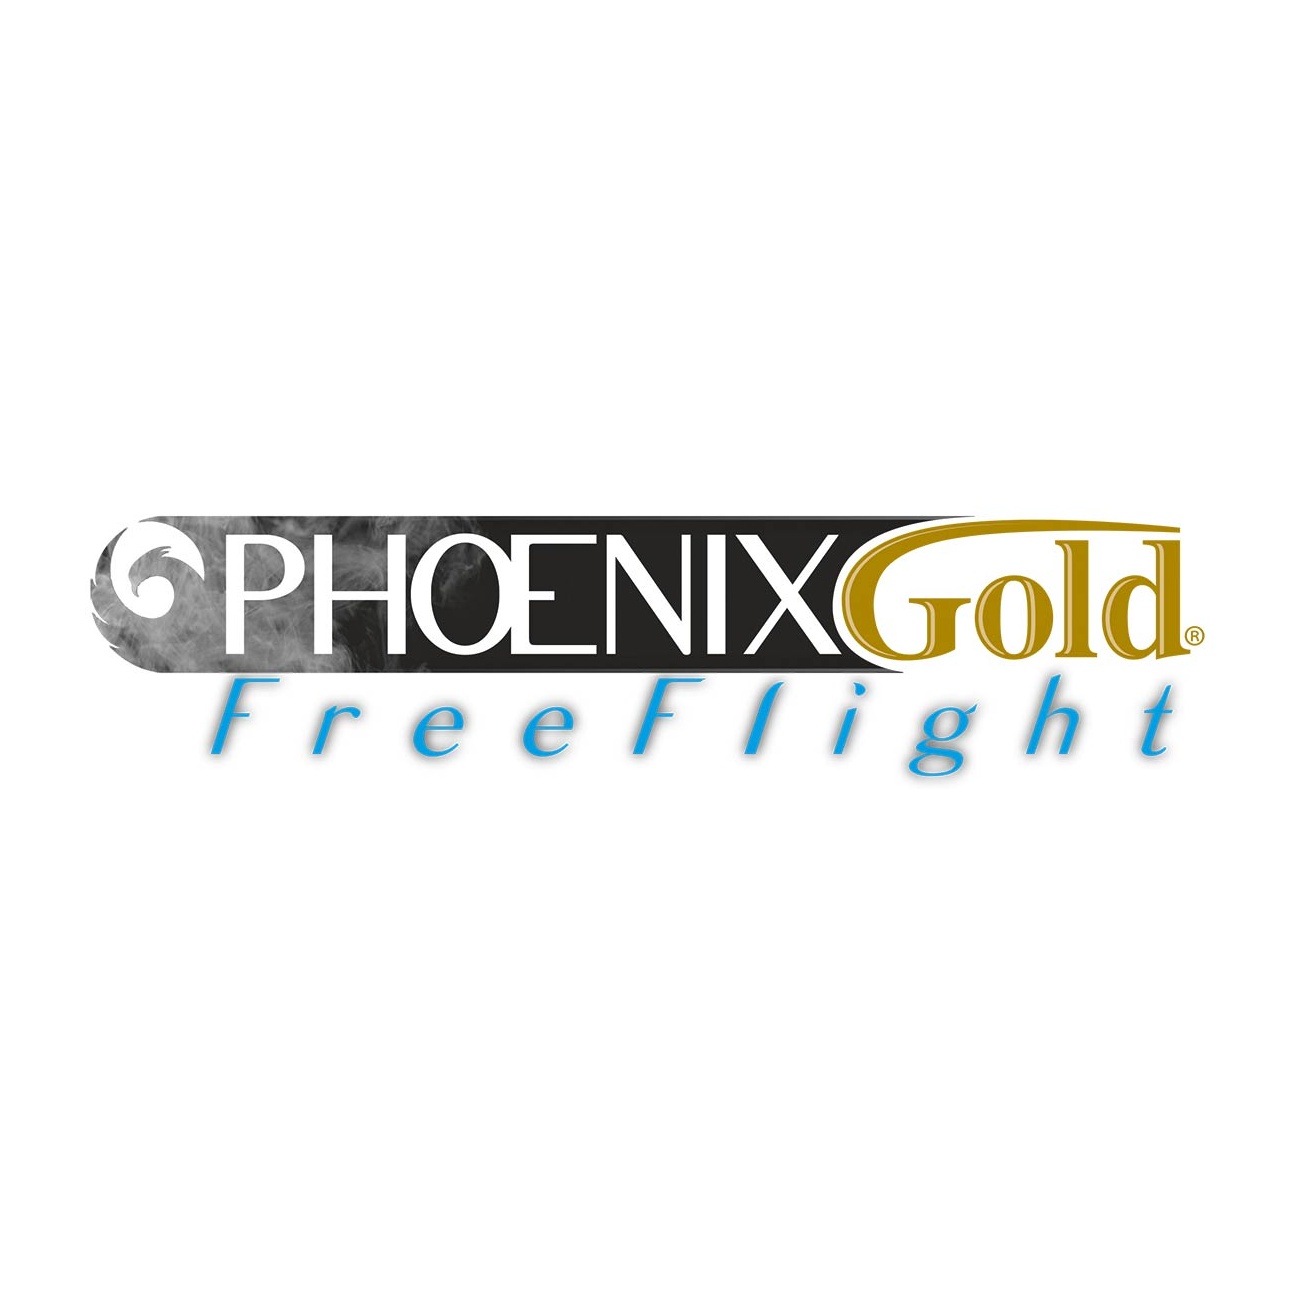 Bild von Phoenix Free Flight Premium